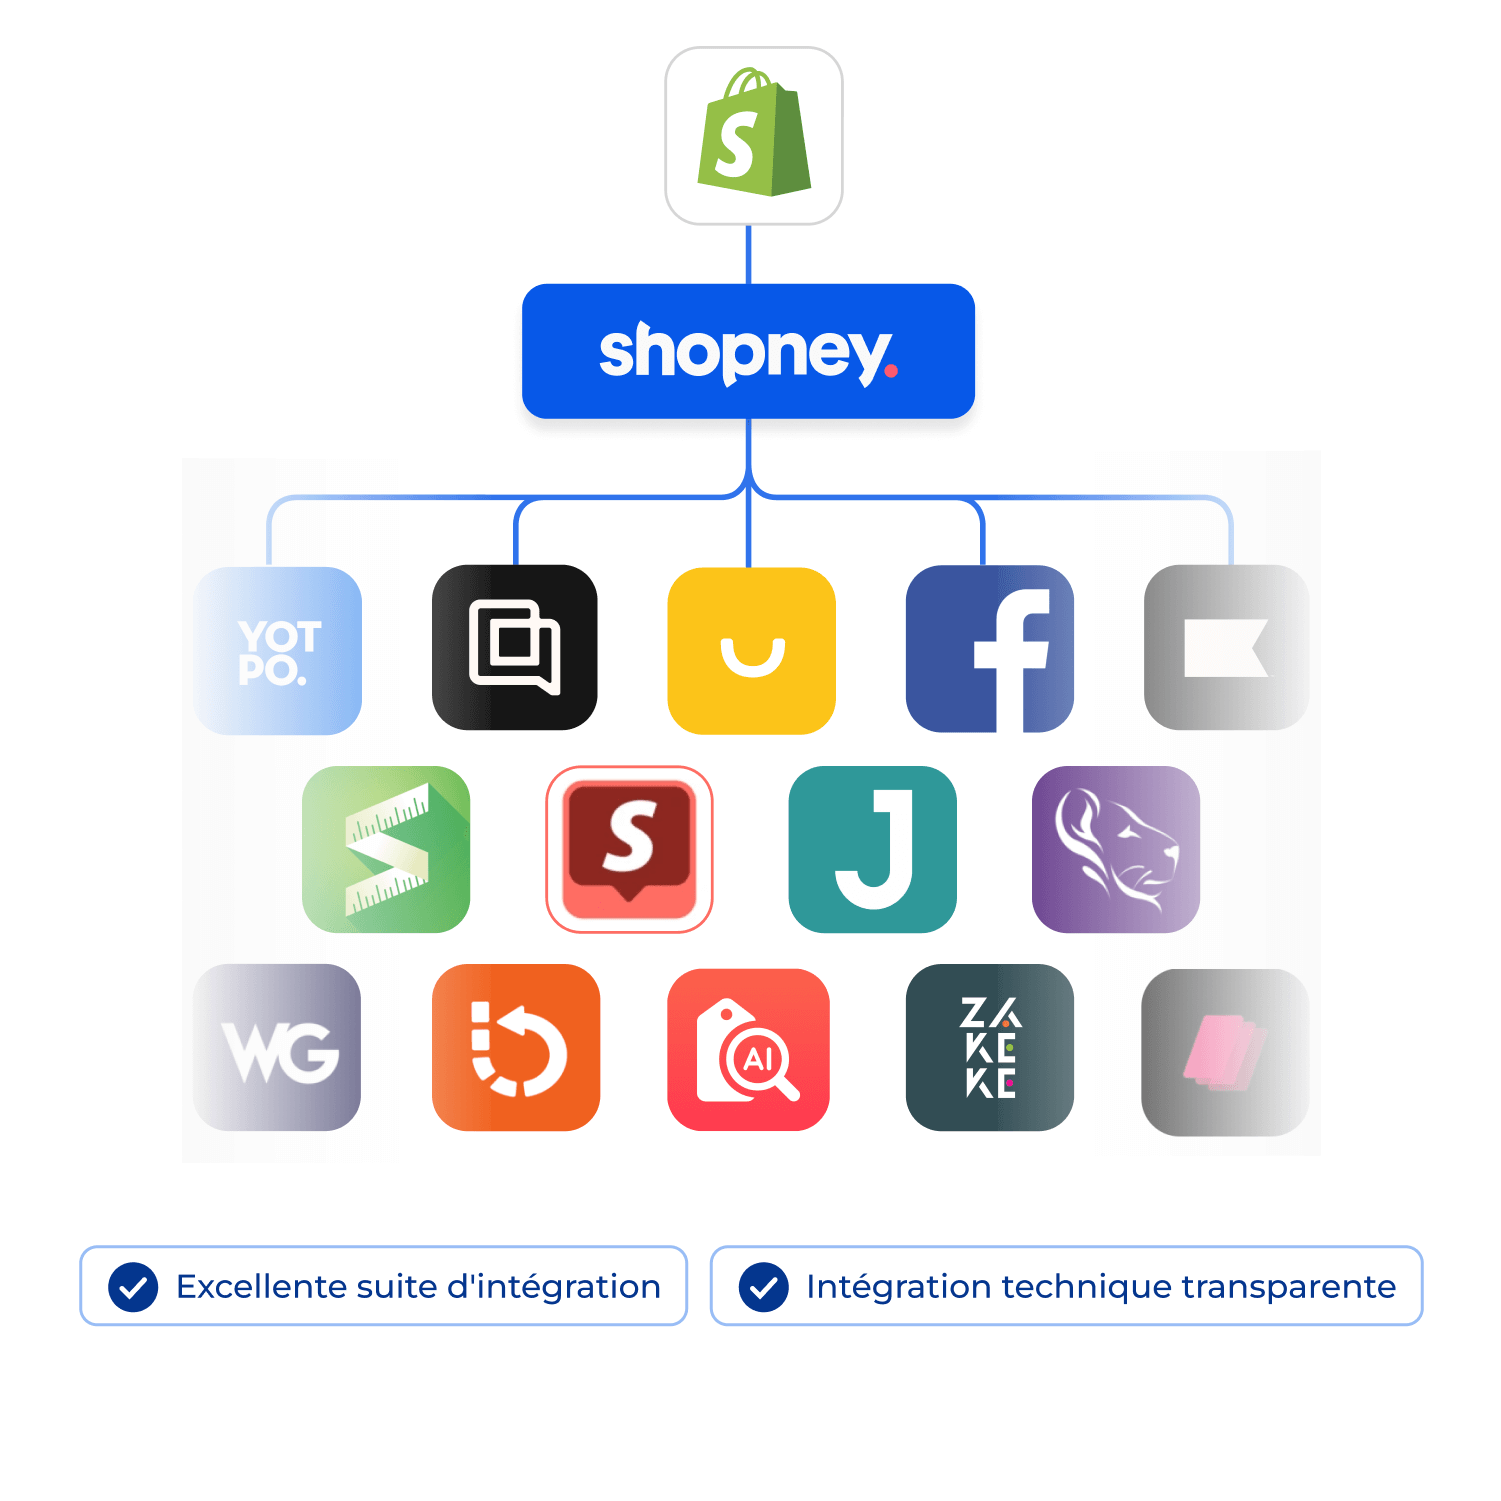 Les applications Shopify intégrées à Shopney